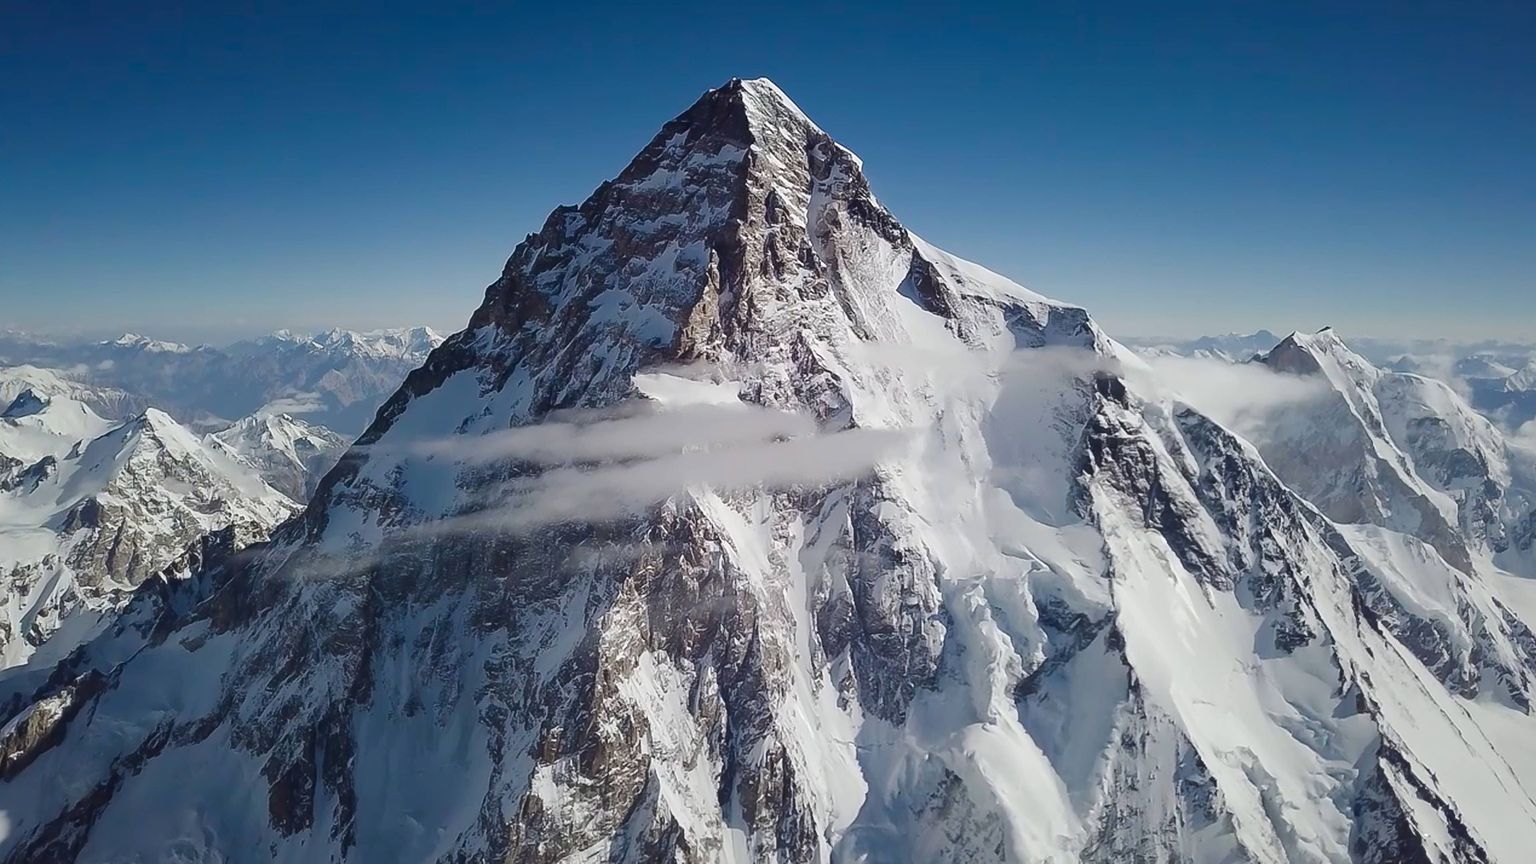 Maailmas kõrguselt teine mägi K2, mis ulatub 8611 meetrini ning mis asub Pakistani ja Hiina piiril